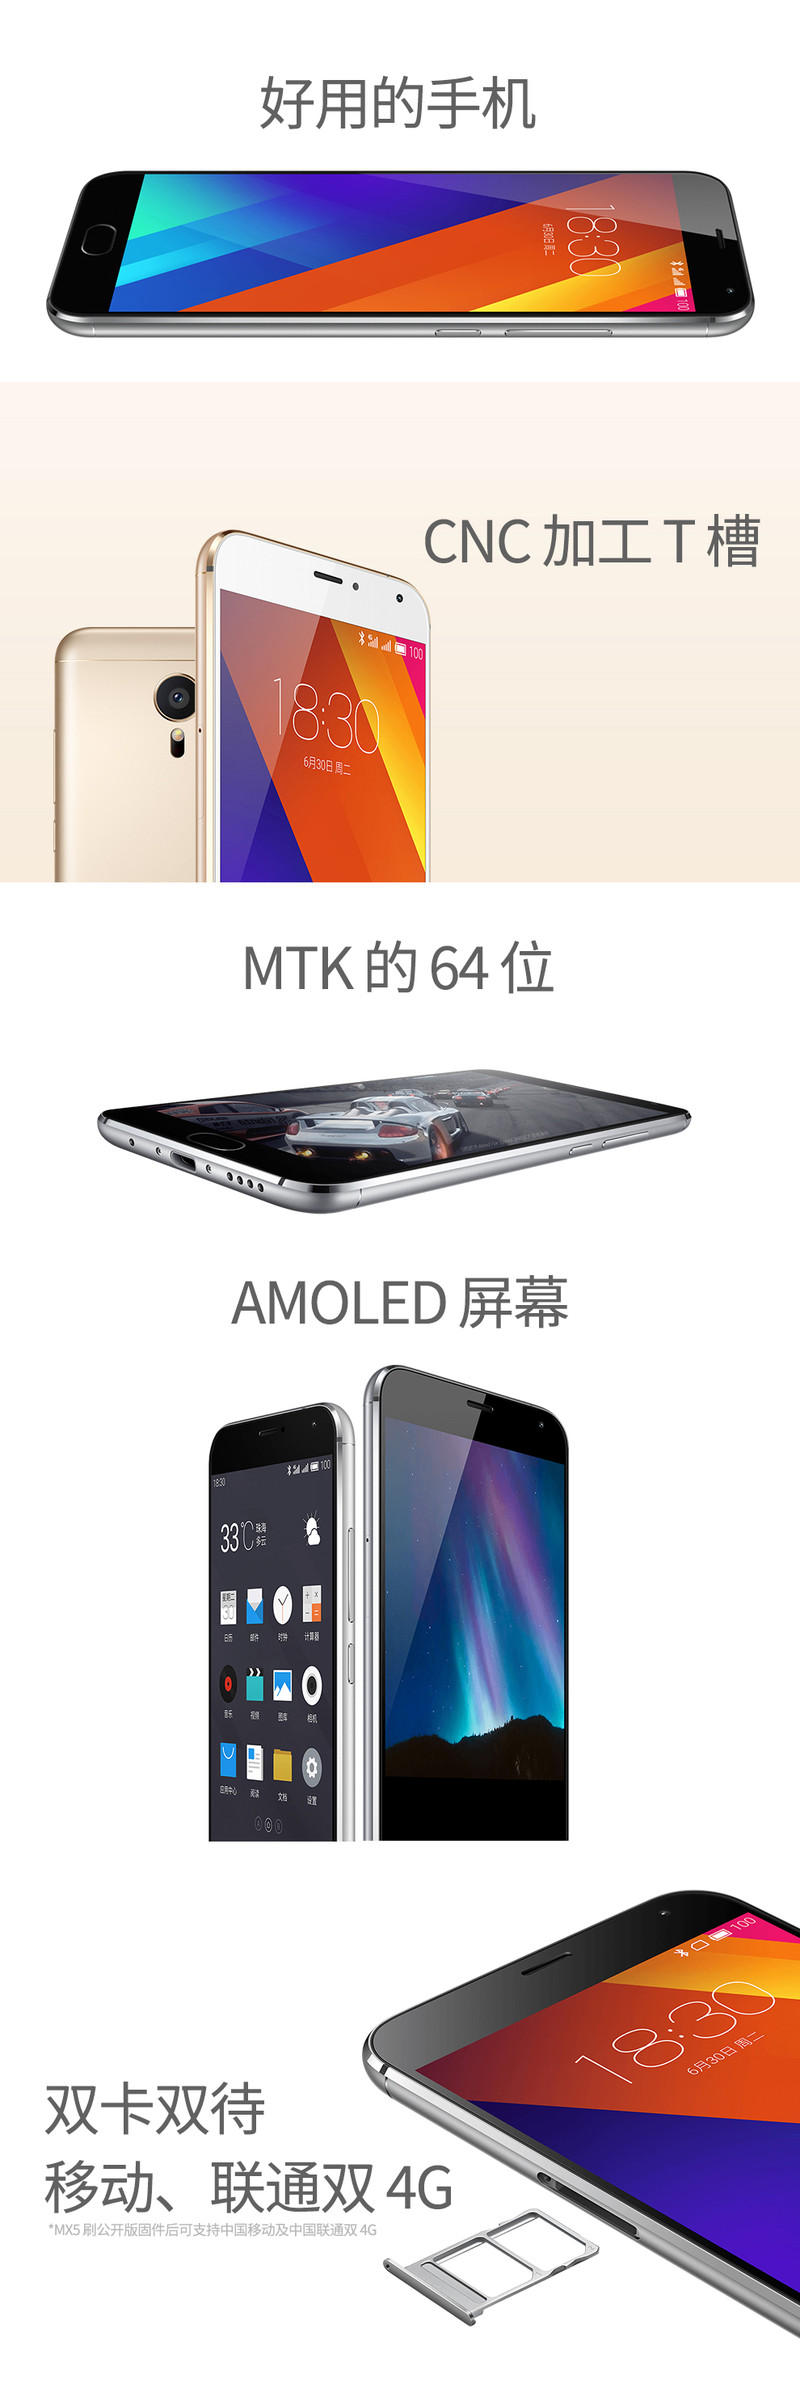 魅族 MX5e 移动、联通双卡双待 4G手机 32G ROM 金色